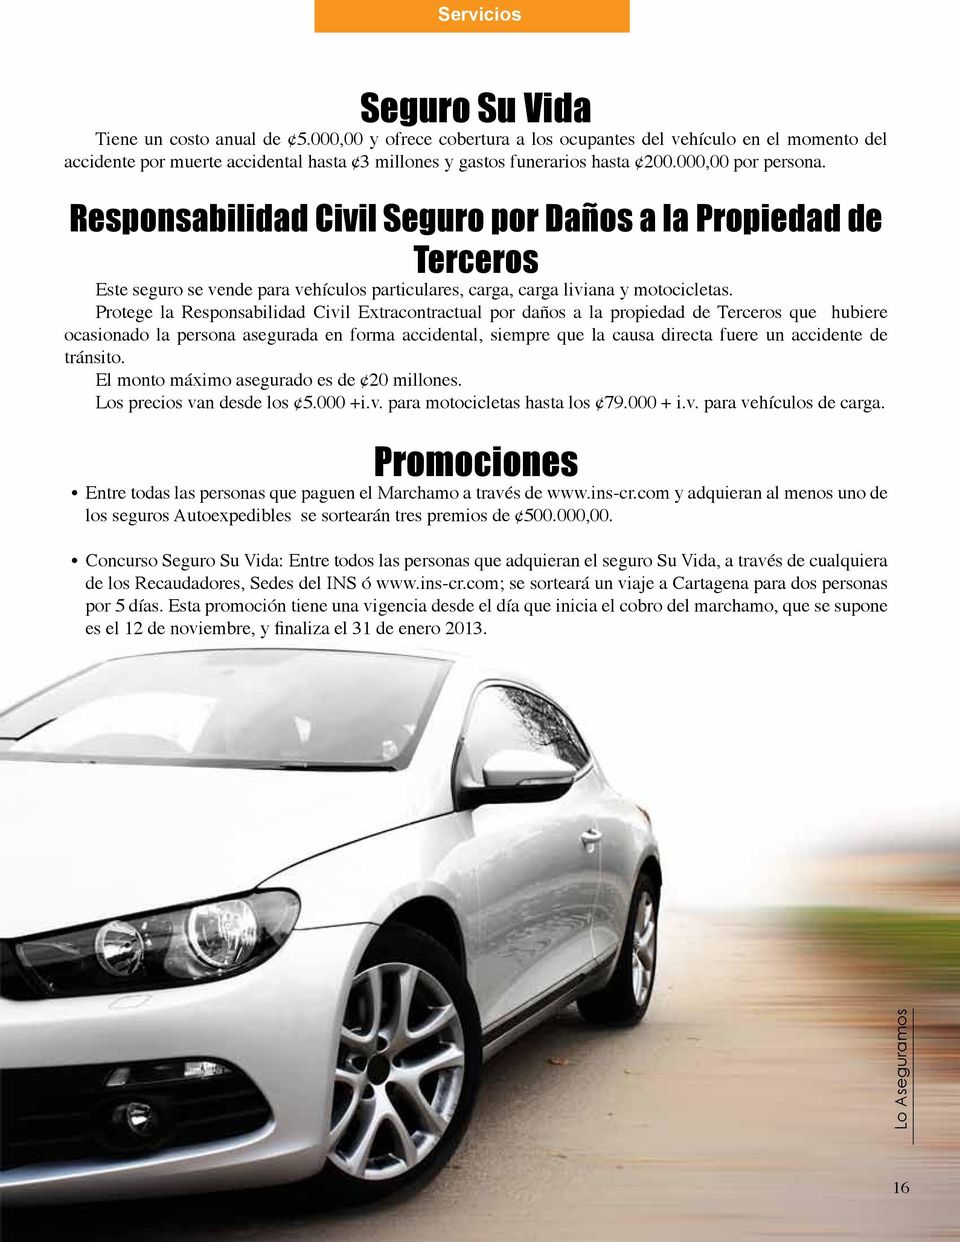 Responsabilidad Civil Seguro por Daños a la Propiedad de Terceros Este seguro se vende para vehículos particulares, carga, carga liviana y motocicletas.